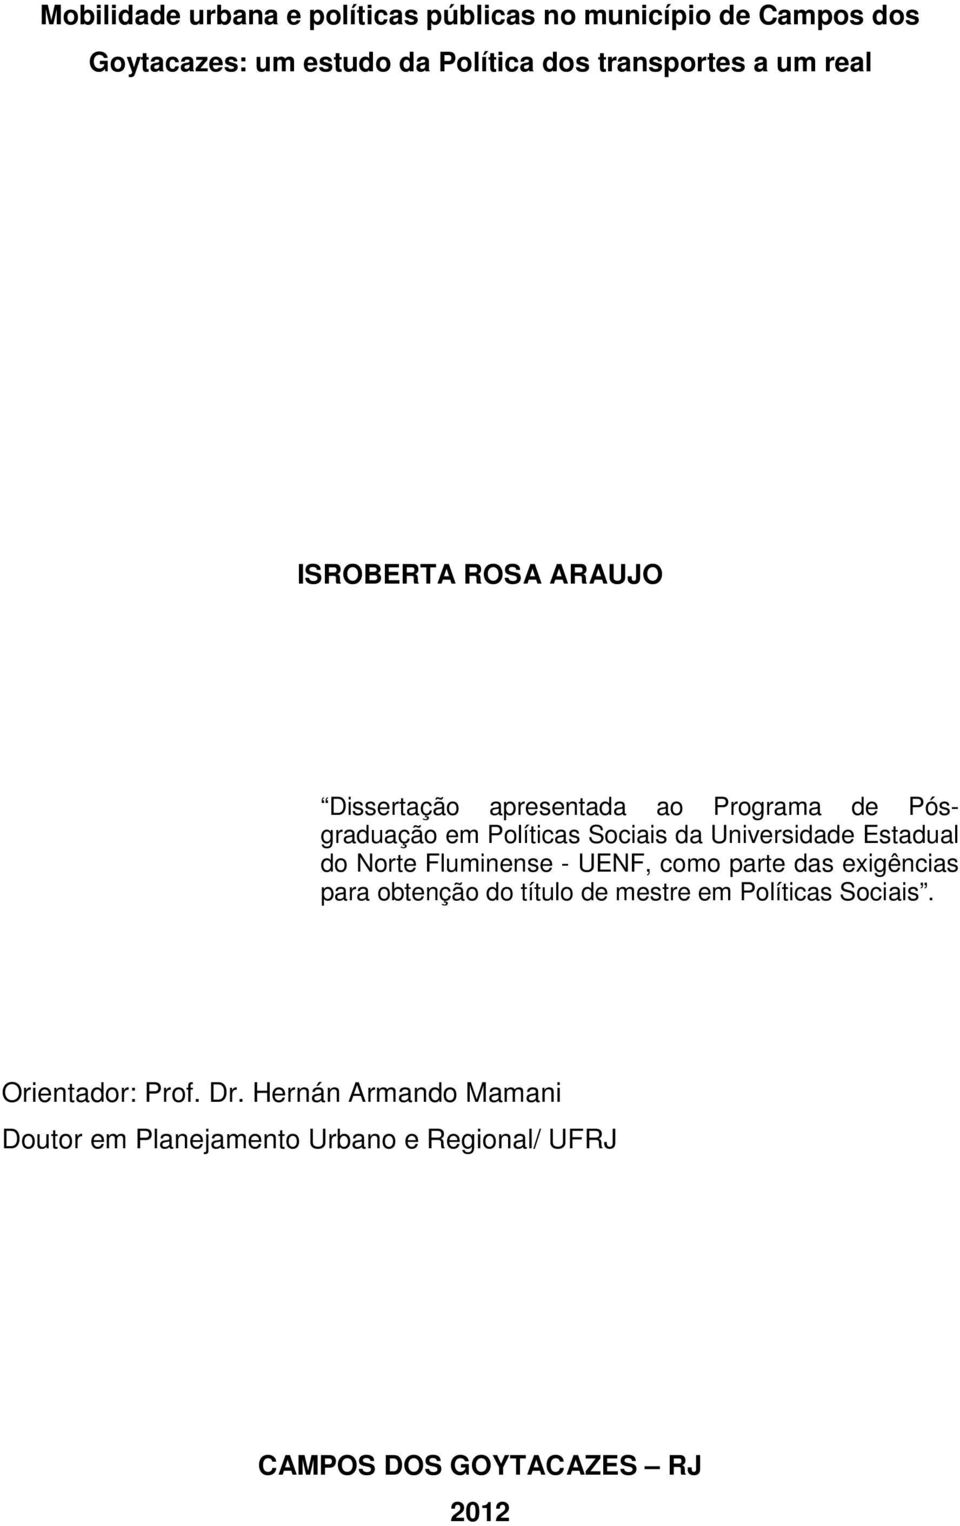 Estadual do Norte Fluminense - UENF, como parte das exigências para obtenção do título de mestre em Políticas Sociais.